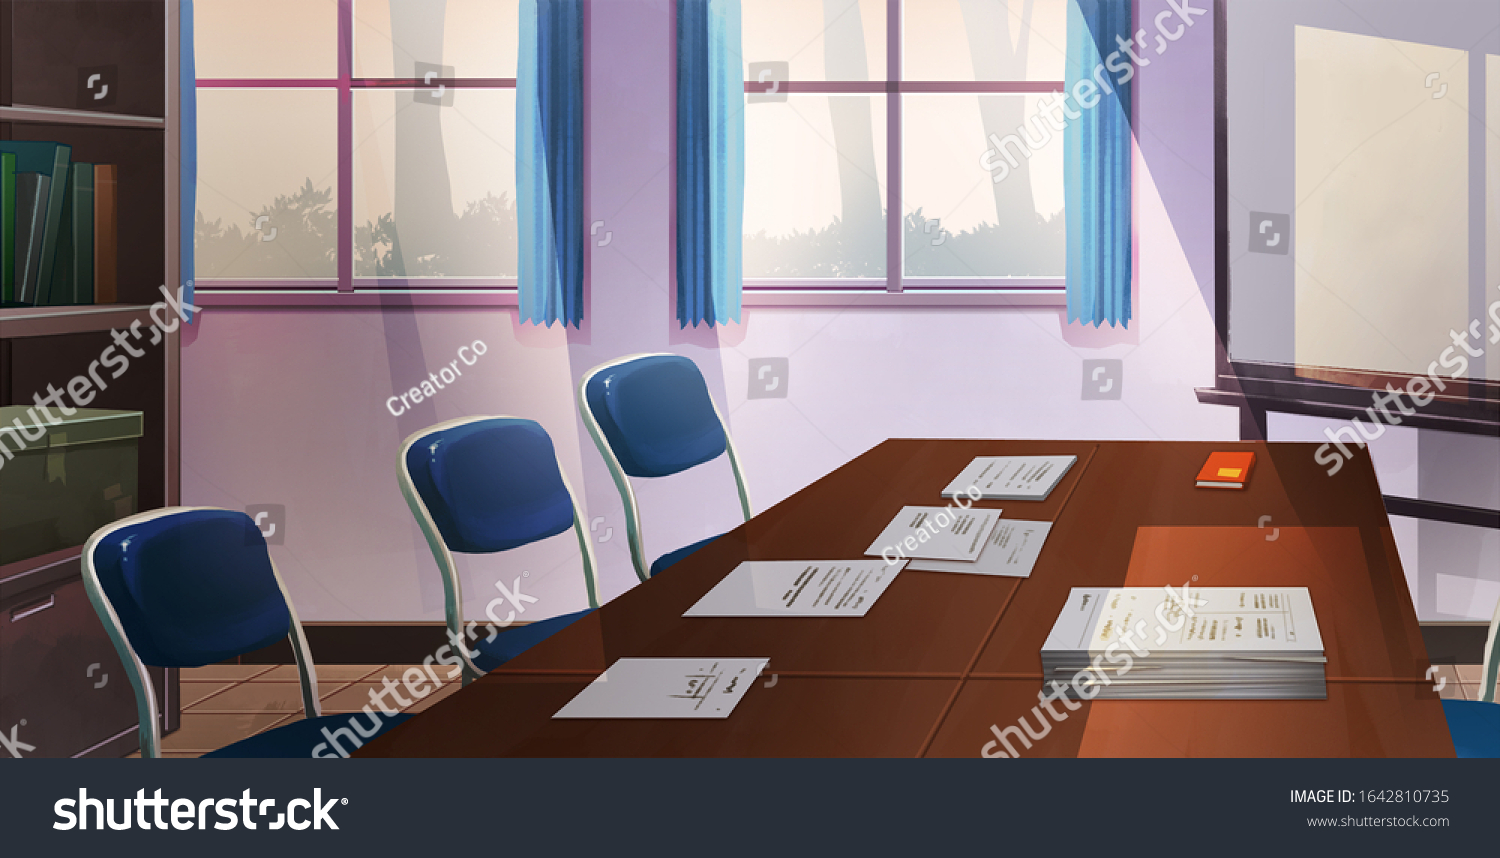 アニメ アニメ 漫画 漫画の背景にクラス会議室 のイラスト素材